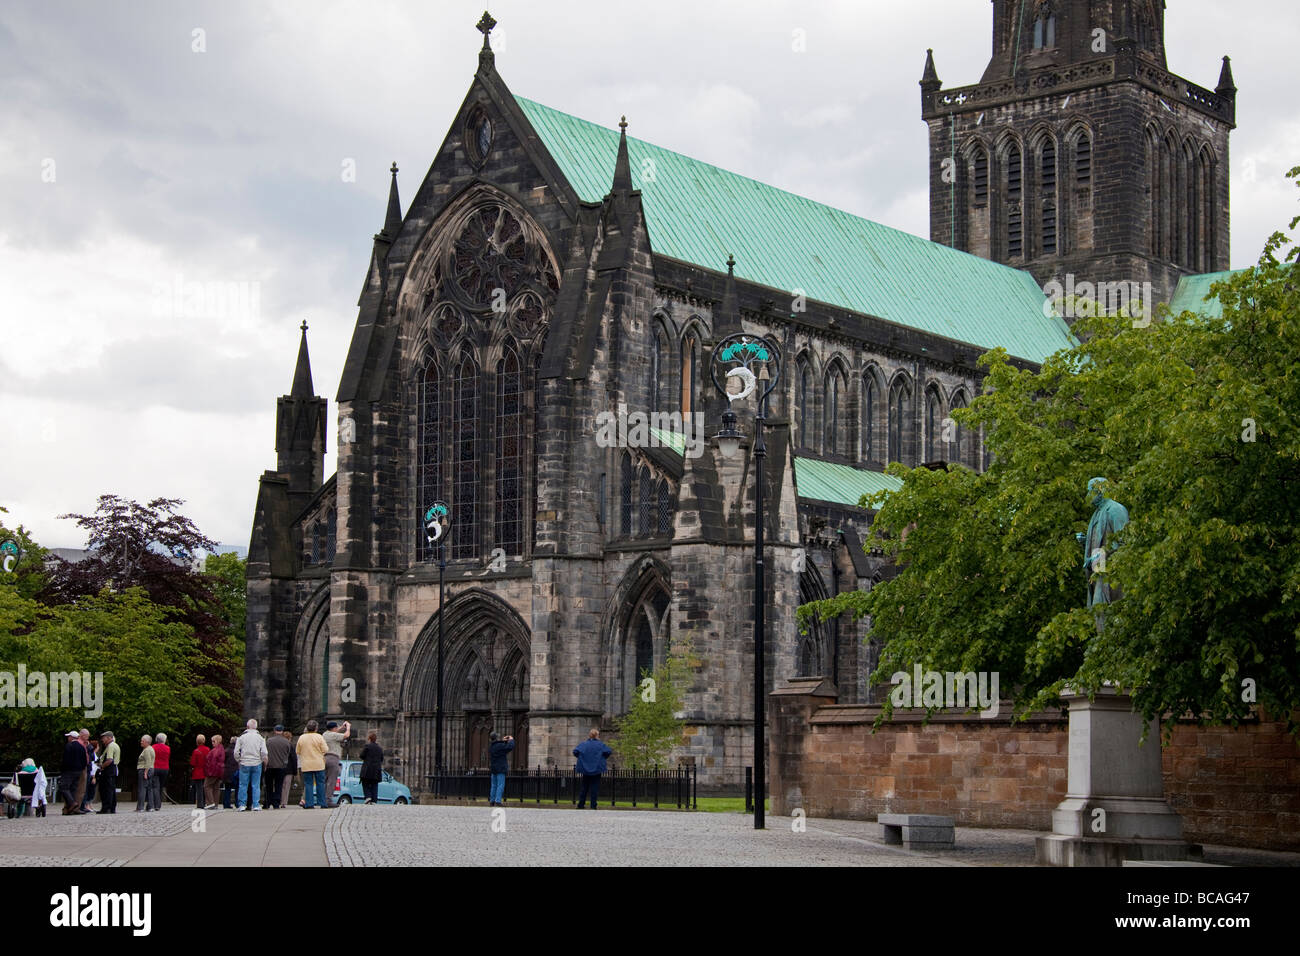 Un groupe de touristes visitant la cathédrale St Mungo, Glasgow, Glasgow Cathedral aka aka le Haut Kirk de Glasgow. Banque D'Images